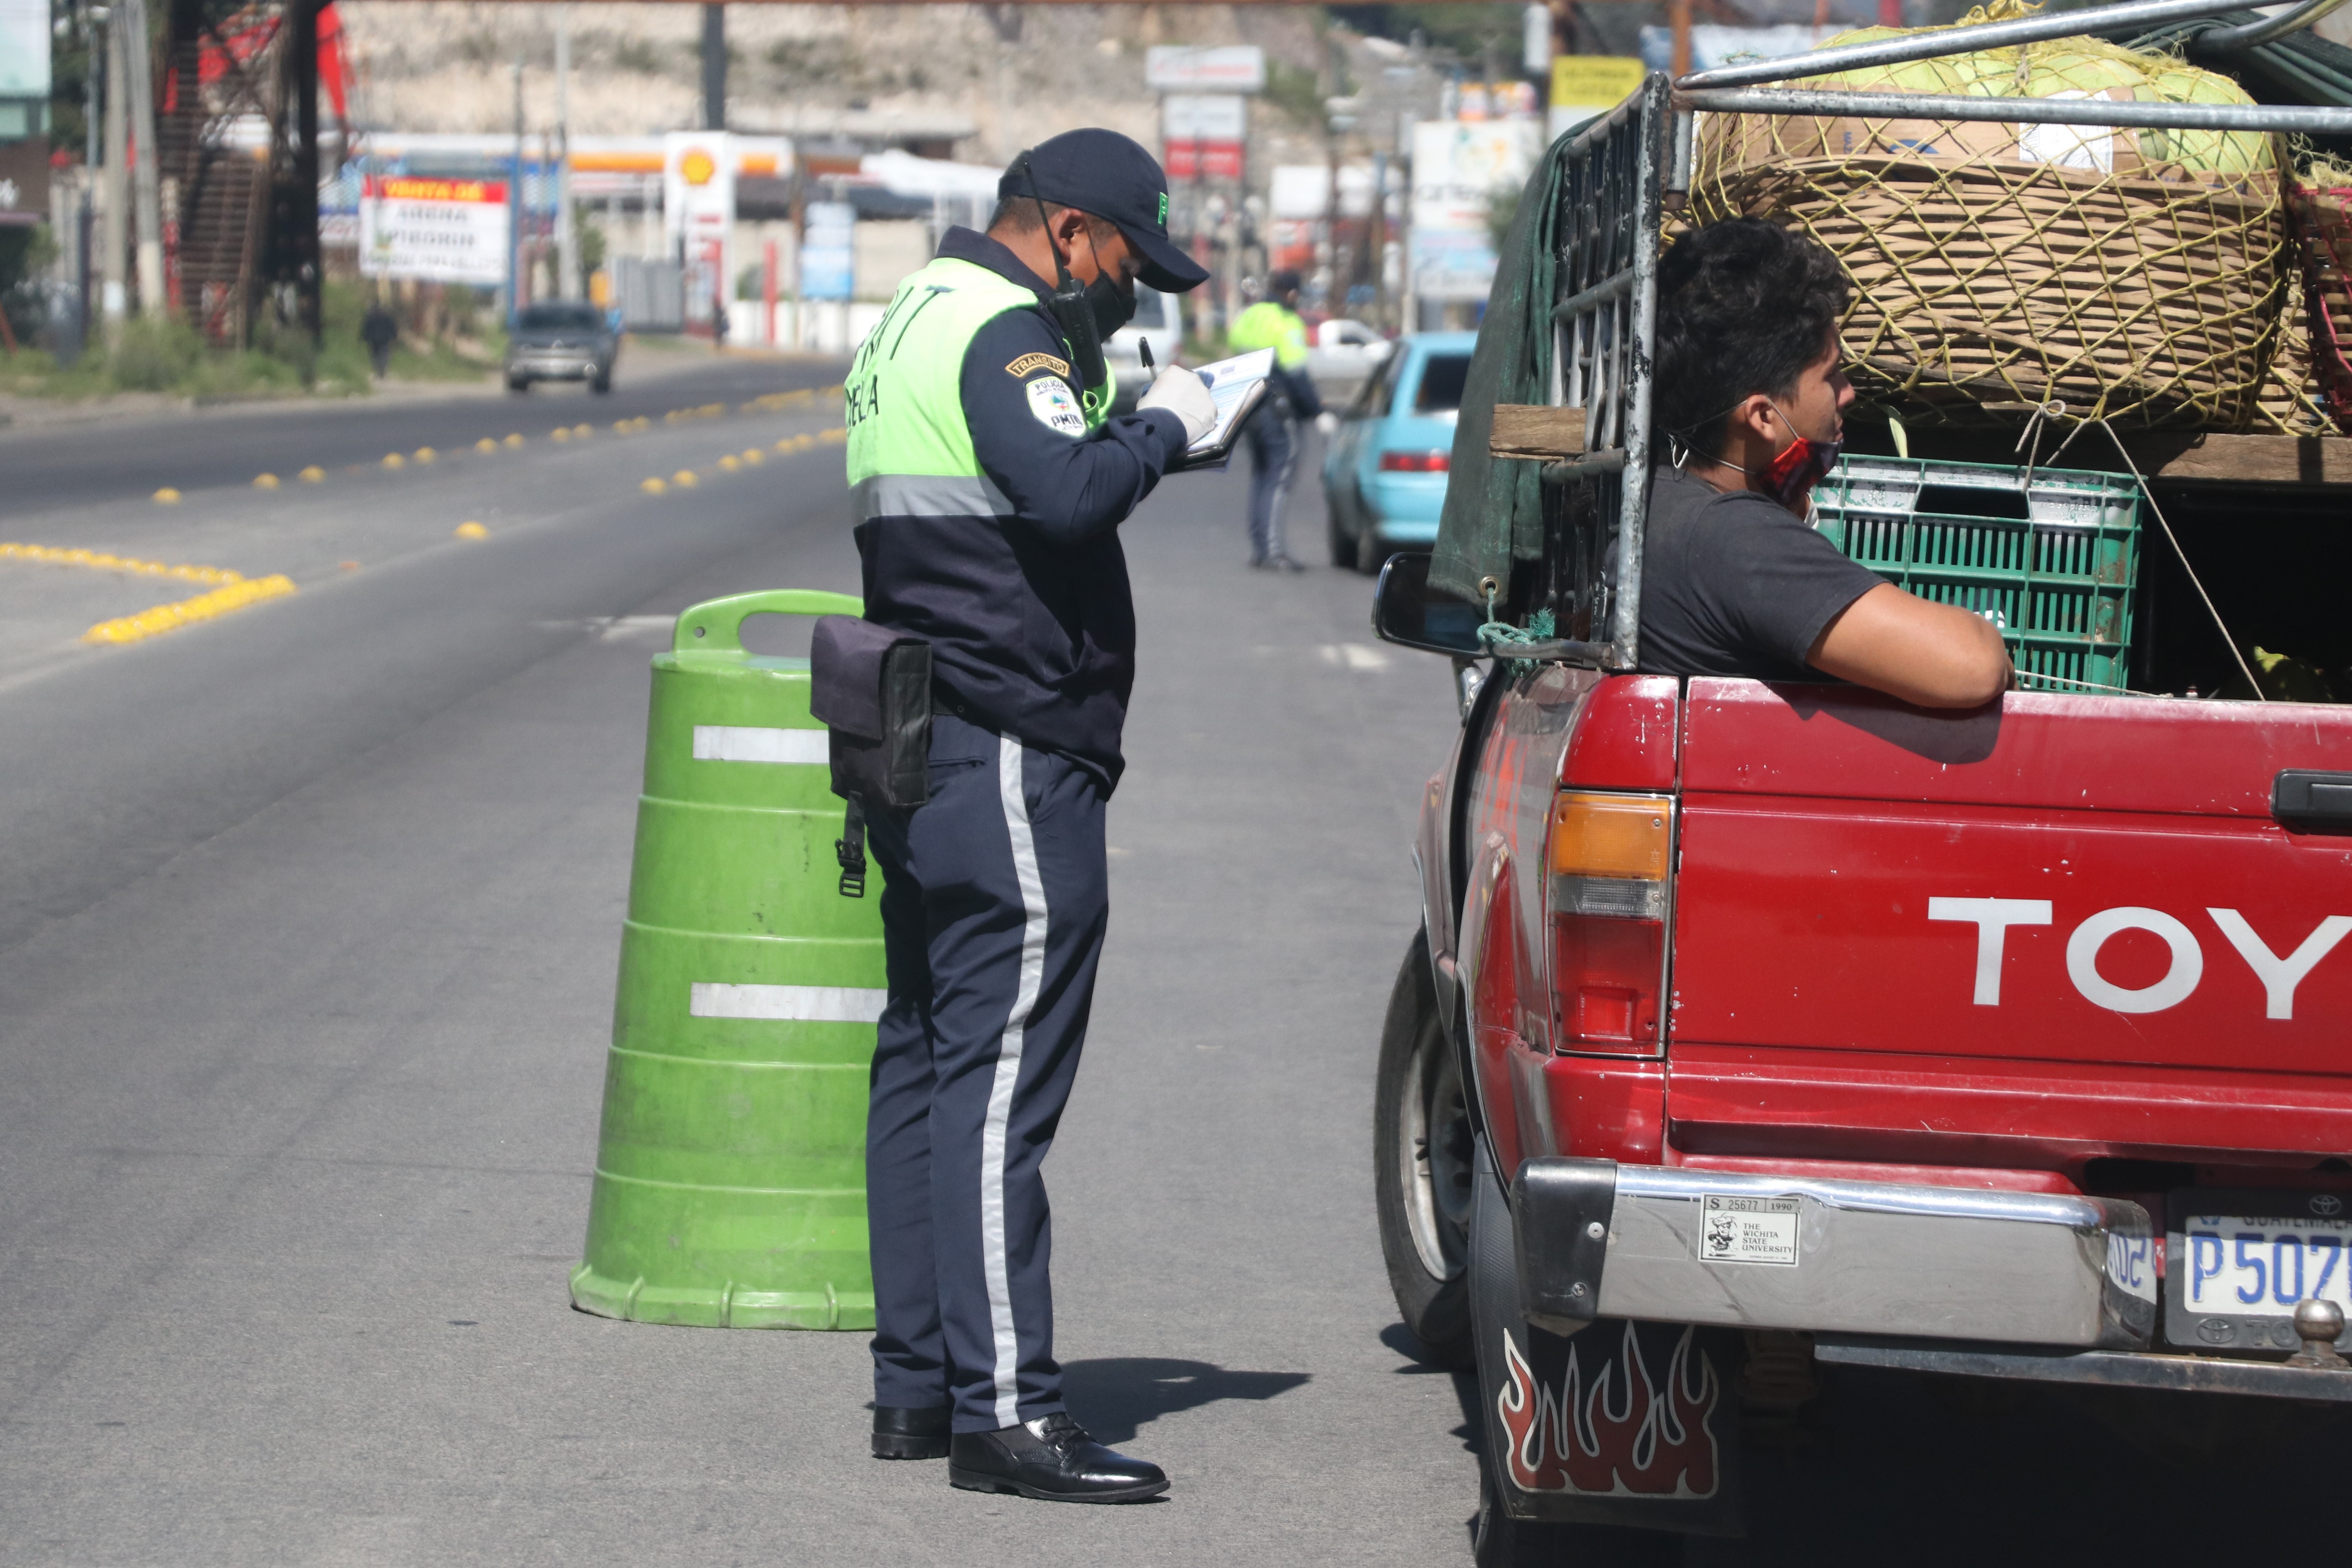 Las multas impuestas fueron por no tener la documentación correcta o por circular en día prohibido sin justificación. (Foto Prensa Libre: Raúl Juárez)